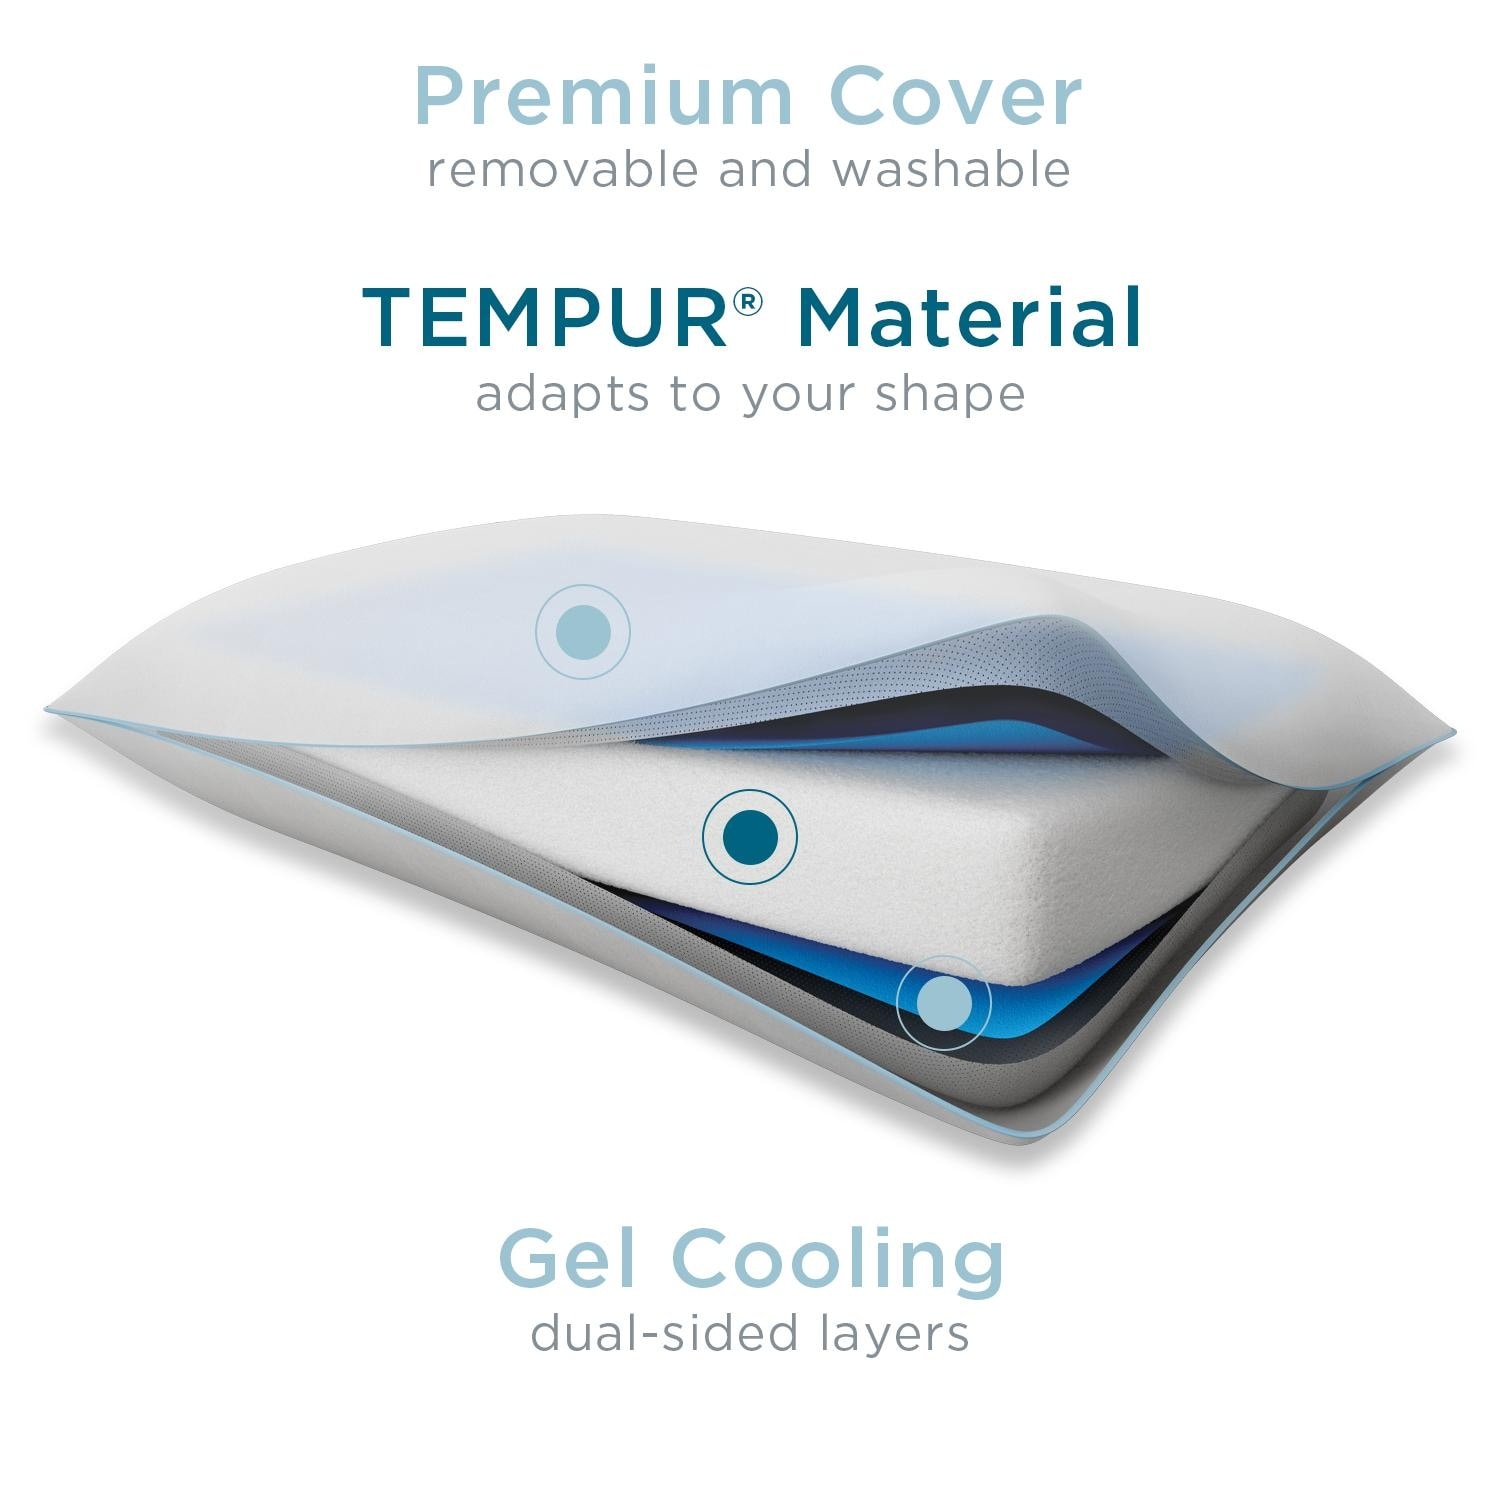 tempur pedic cloud breeze dual cooling pillow